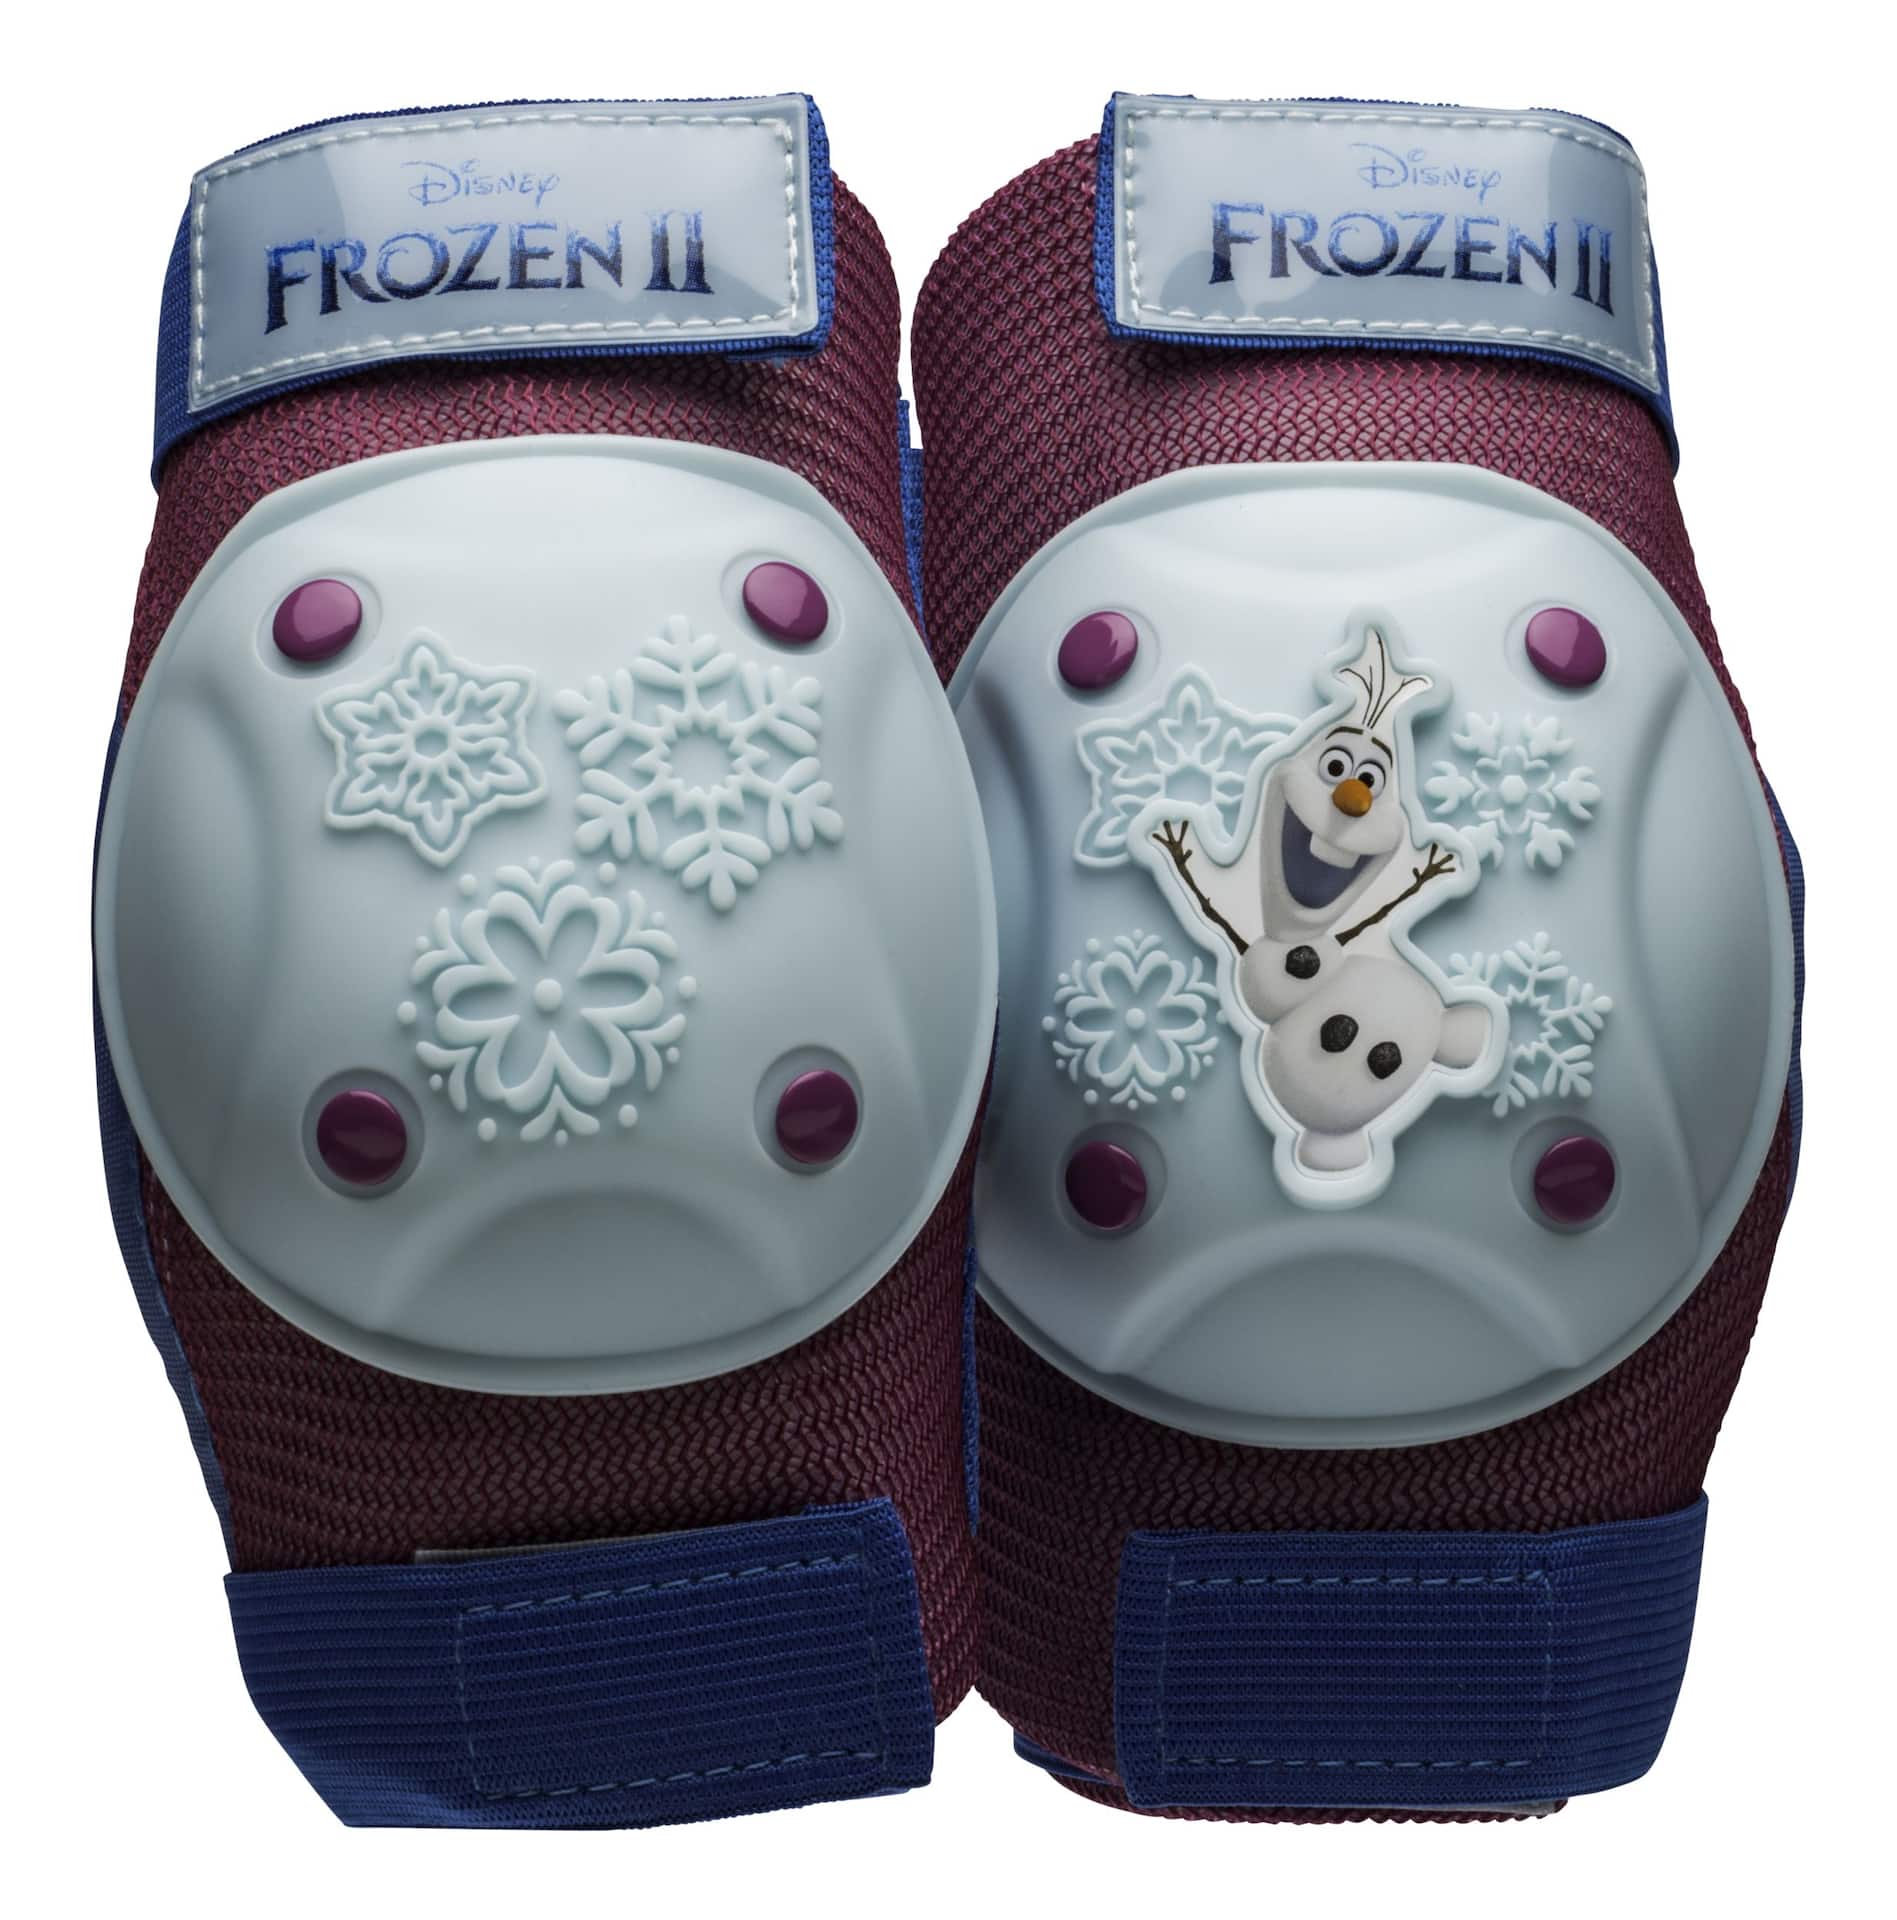 Disney Frozen 2 Kids' Protective Gear Bike Set w/Padded Gloves, Purple